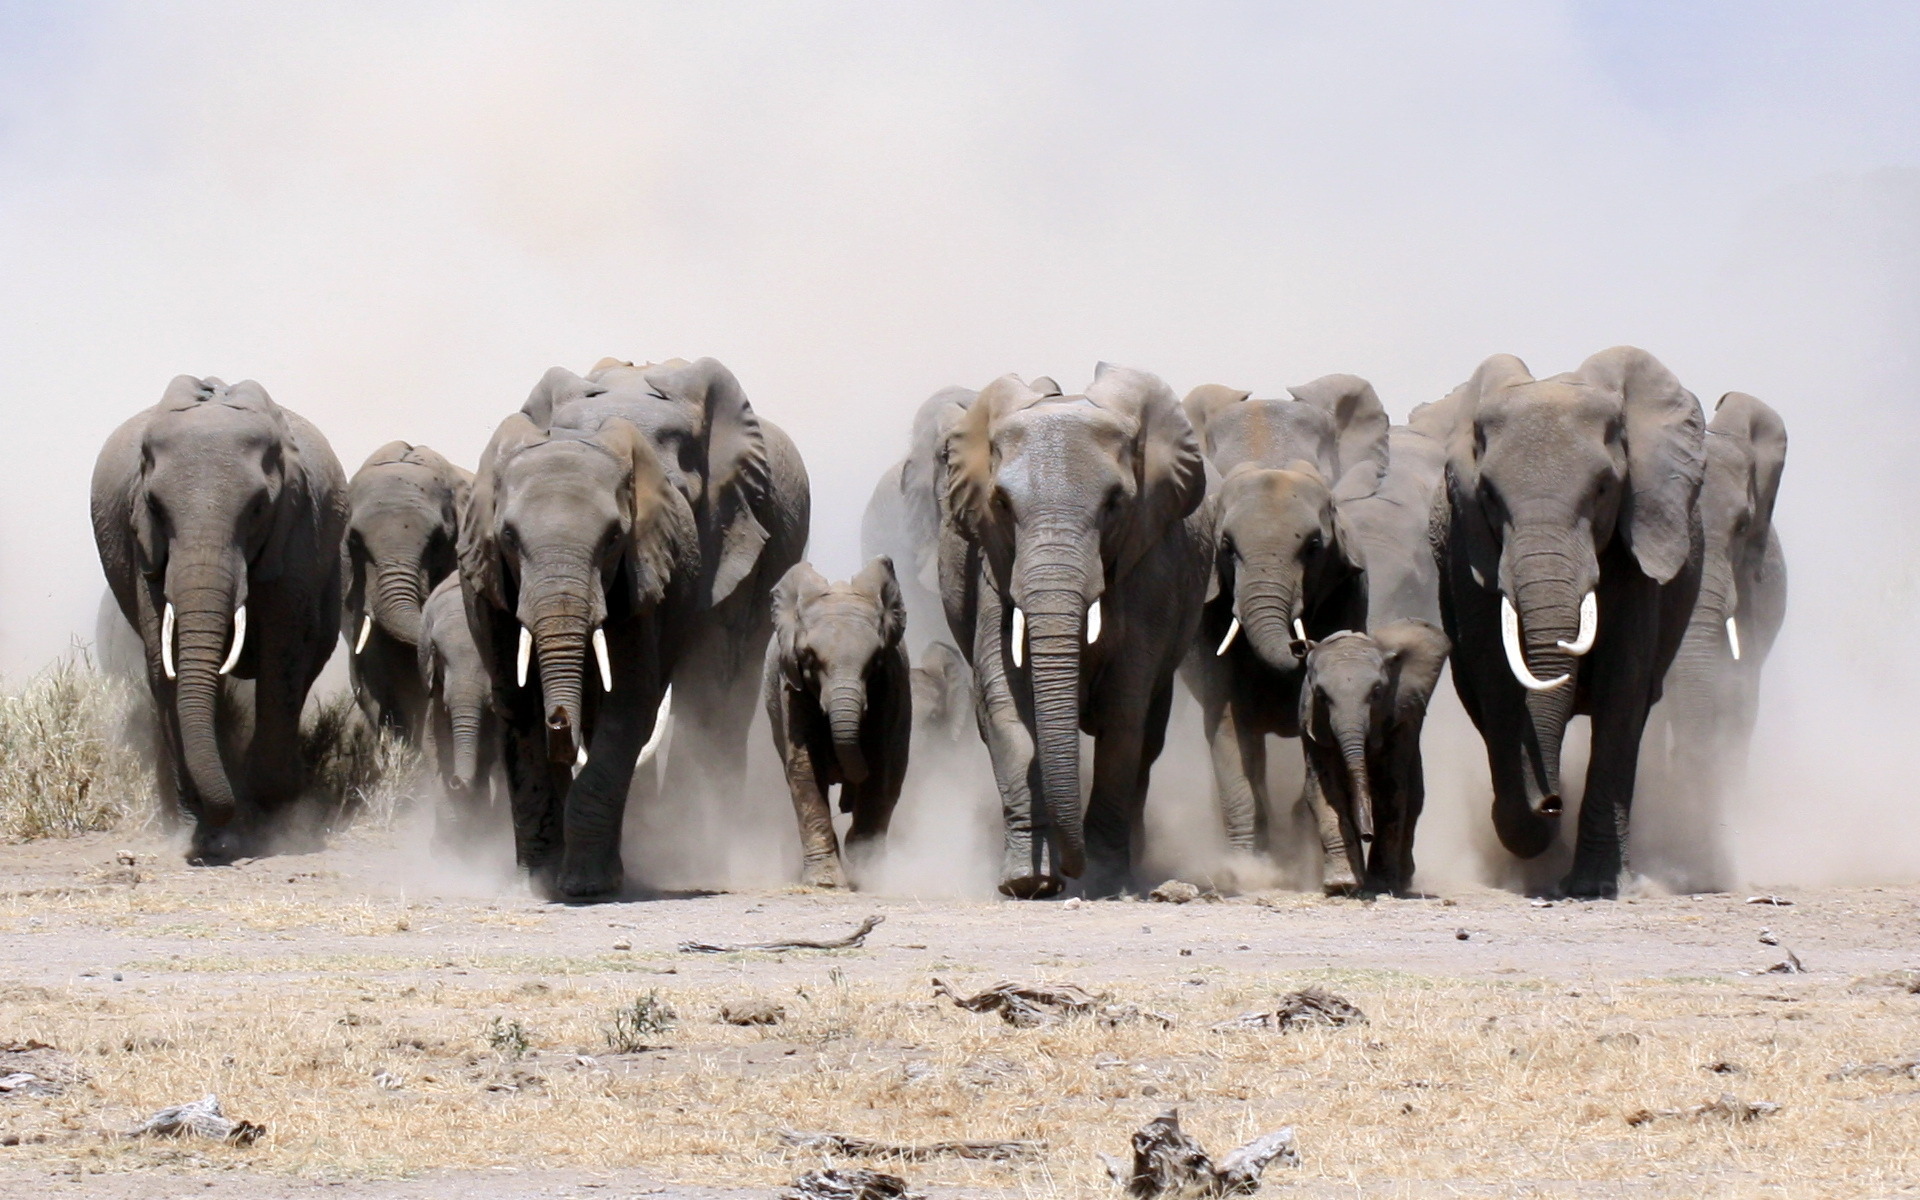 fondos de pantalla de elefantes wallpapers hd  descargar gratis